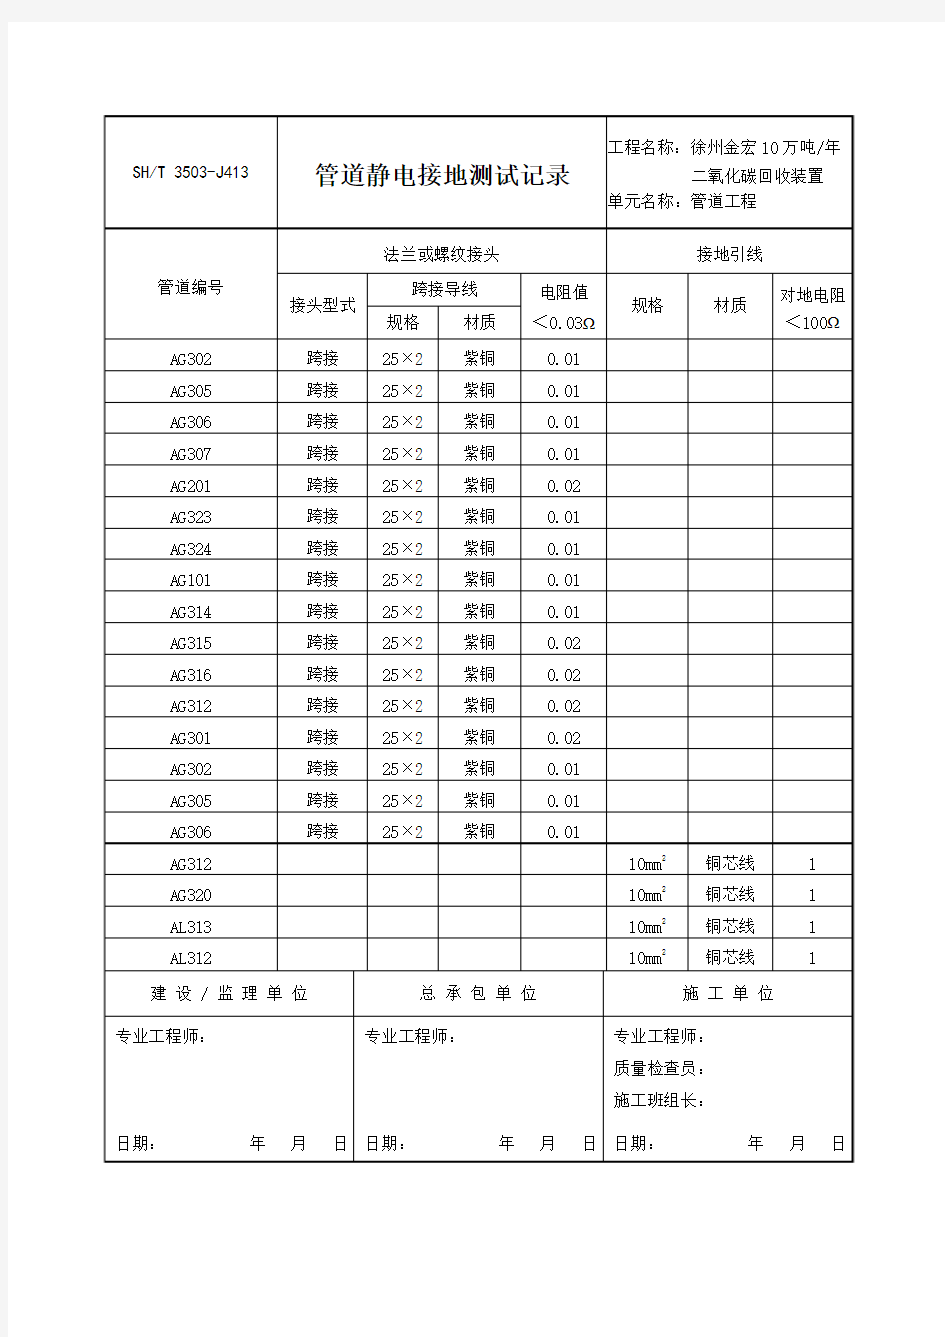 SHT3503-2007石油化工建设工程项目交工技术文件规定中文表格-3503-J413管道静电接地测试记录